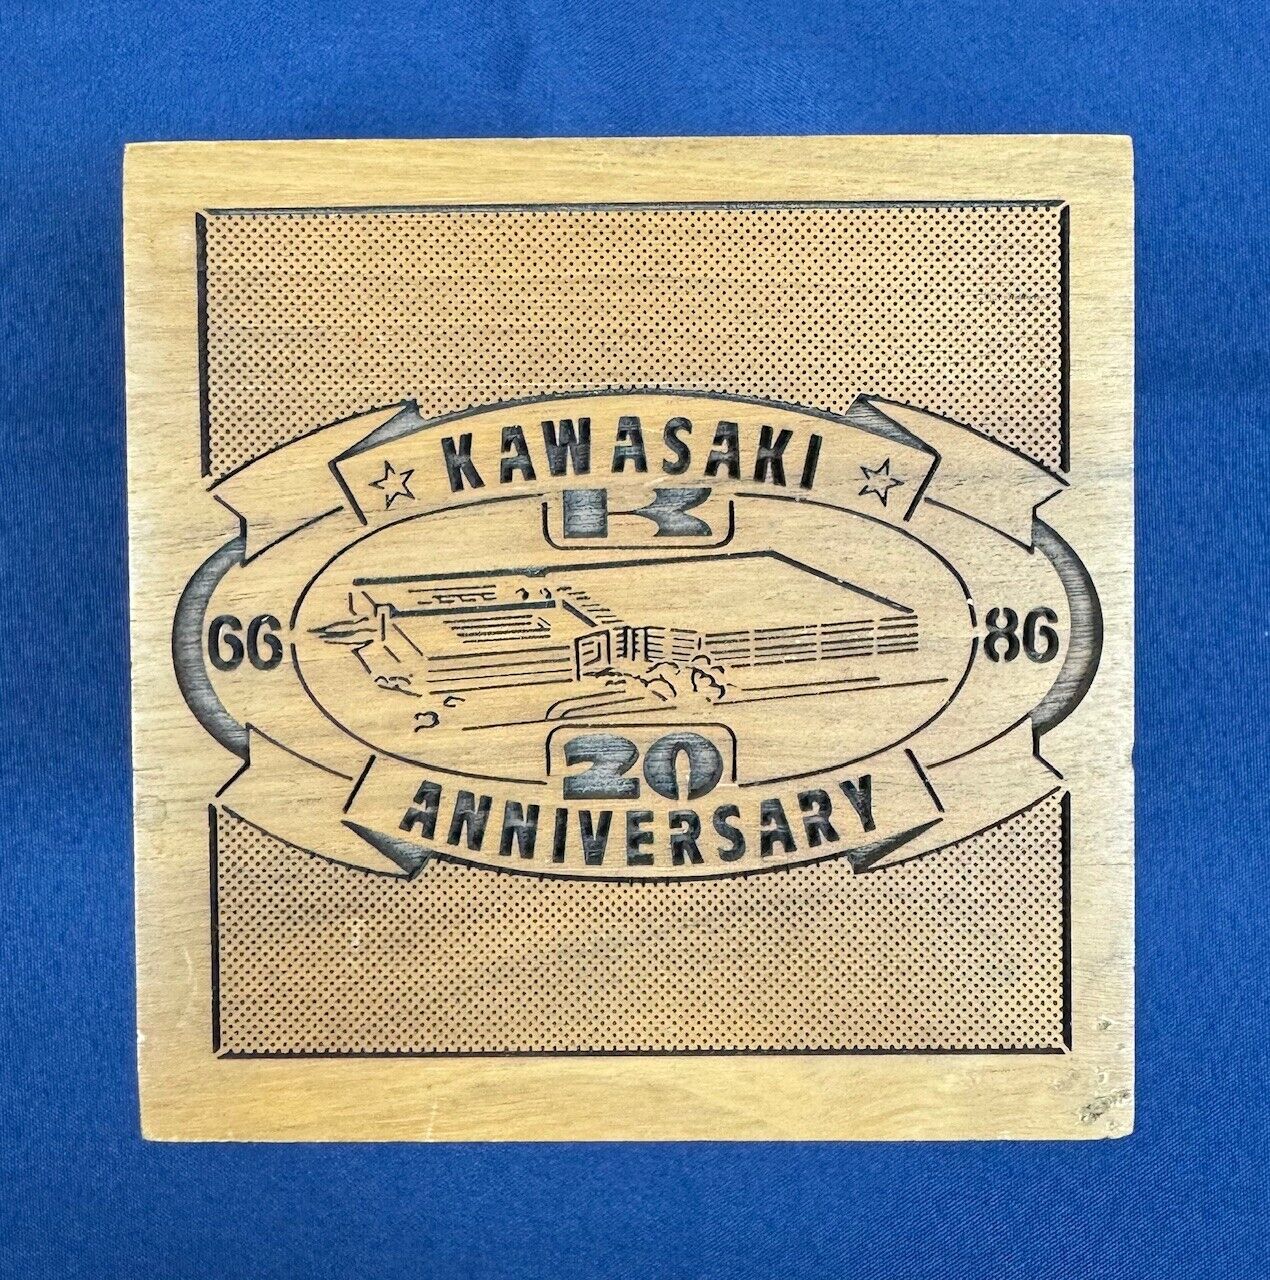 Kawasaki Display Case - 20th Anniversary